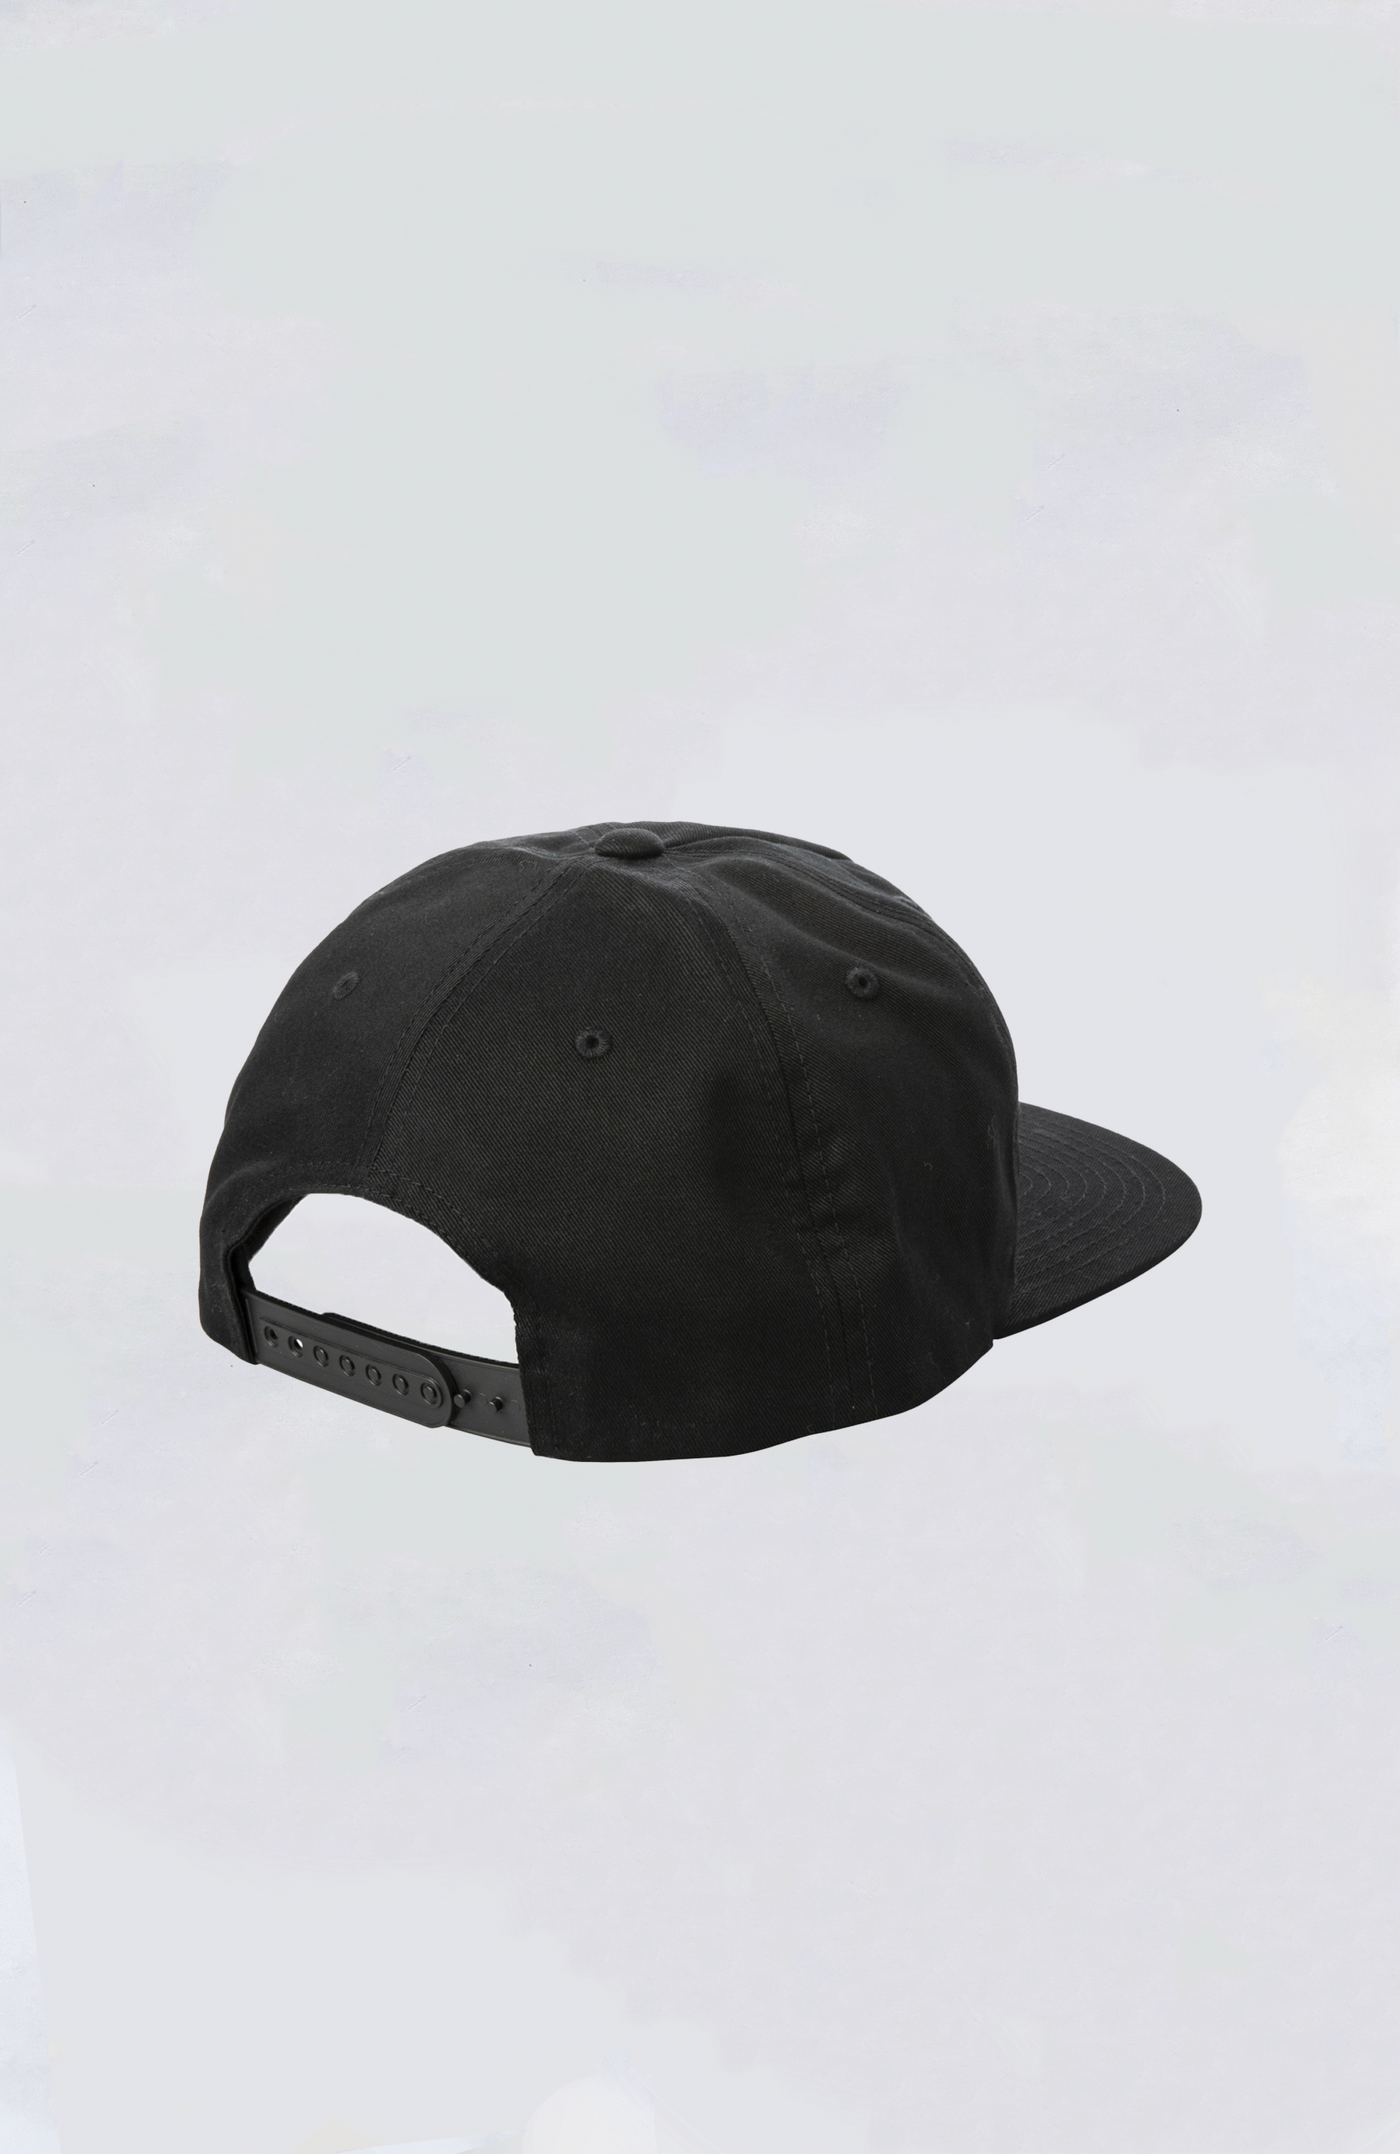 RVCA Snapback Hat - RVCA Sport Hat